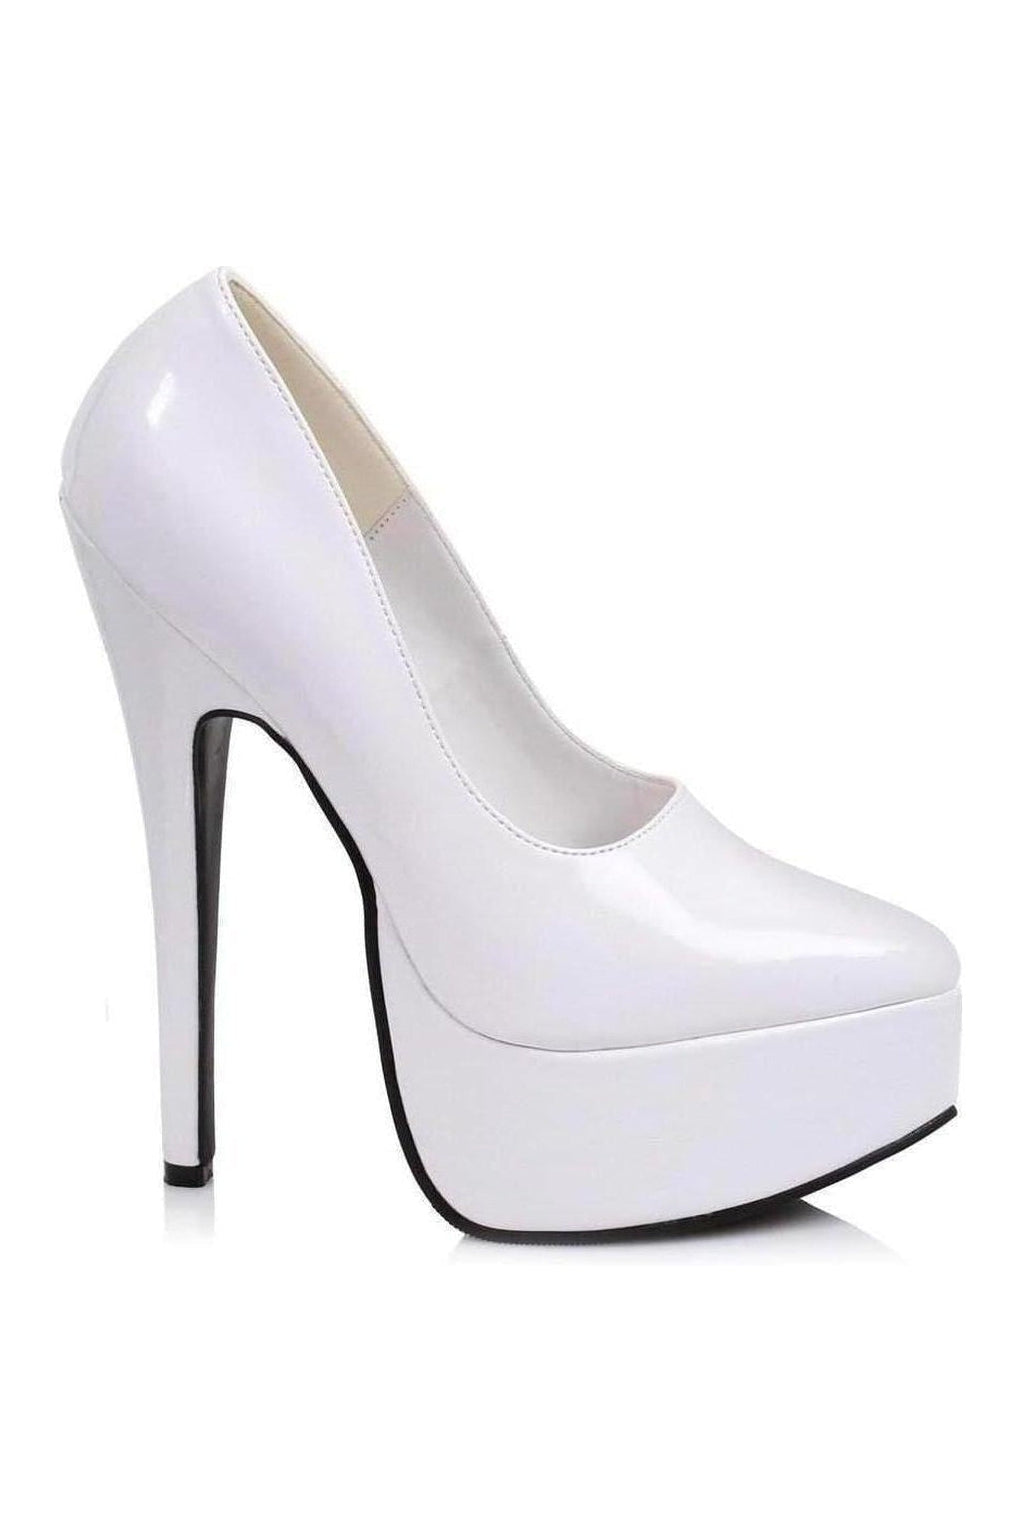 652-PRINCE Platform Pump | White Patent-Pumps- Stripper Shoes at SEXYSHOES.COM